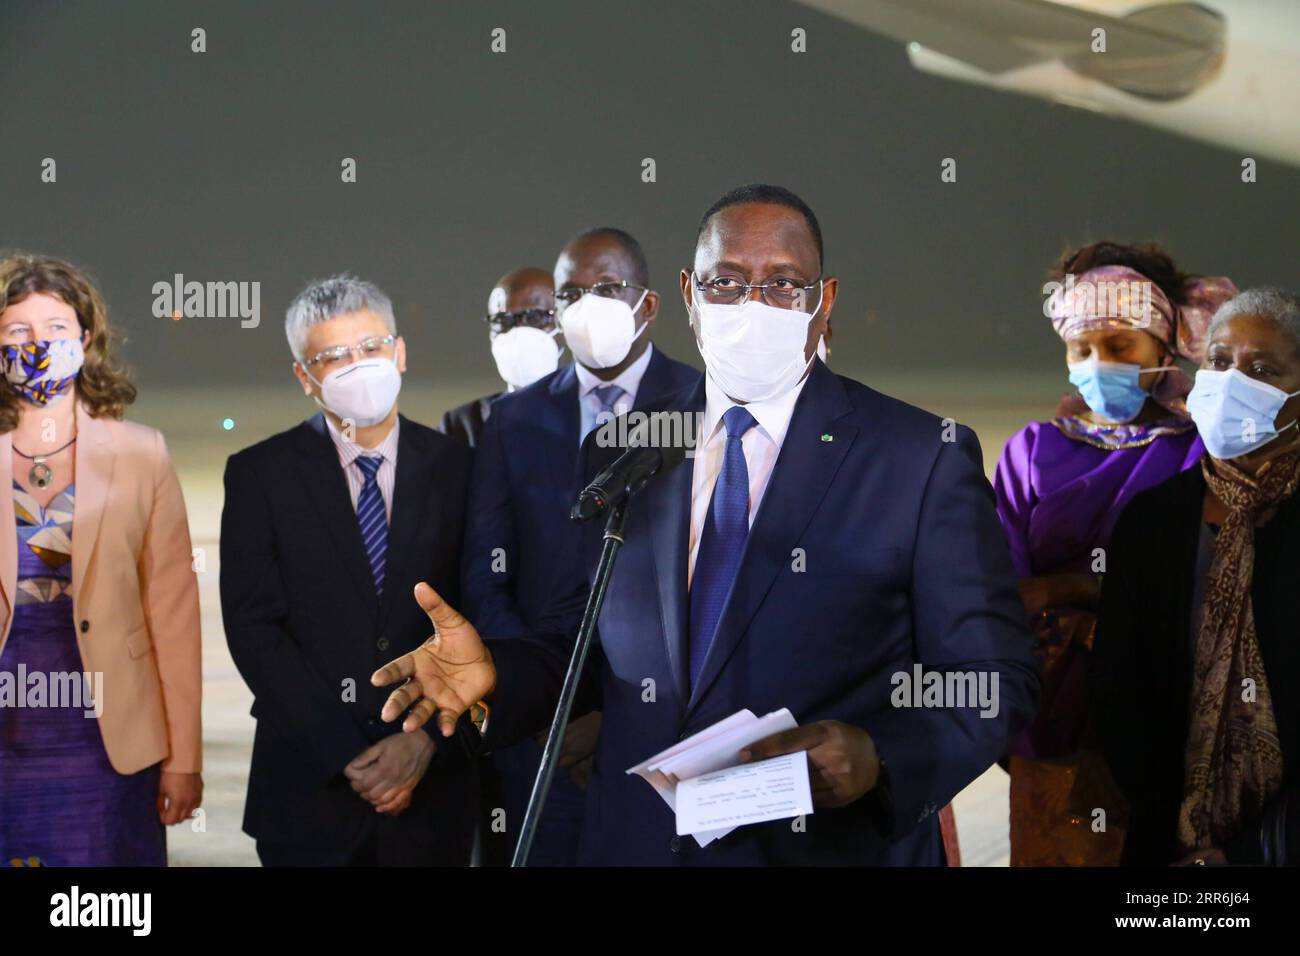 210218 -- DAKAR, 18 febbraio 2021 -- il presidente senegalese Macky Sall parla durante la cerimonia di consegna del primo lotto di vaccino anti COVID-19 Sinopharm cinese all'aeroporto internazionale Blaise Diagne di Dakar, Senegal, 17 febbraio 2021. Il Senegal mercoledì sera ha ricevuto il primo lotto di vaccino anti COVID-19 Sinopharm della Cina. SENEGAL-DAKAR-CINESE COVID-19 VACCINO-ARRIVO XINGXJIANQIAO PUBLICATIONXNOTXINXCHN Foto Stock